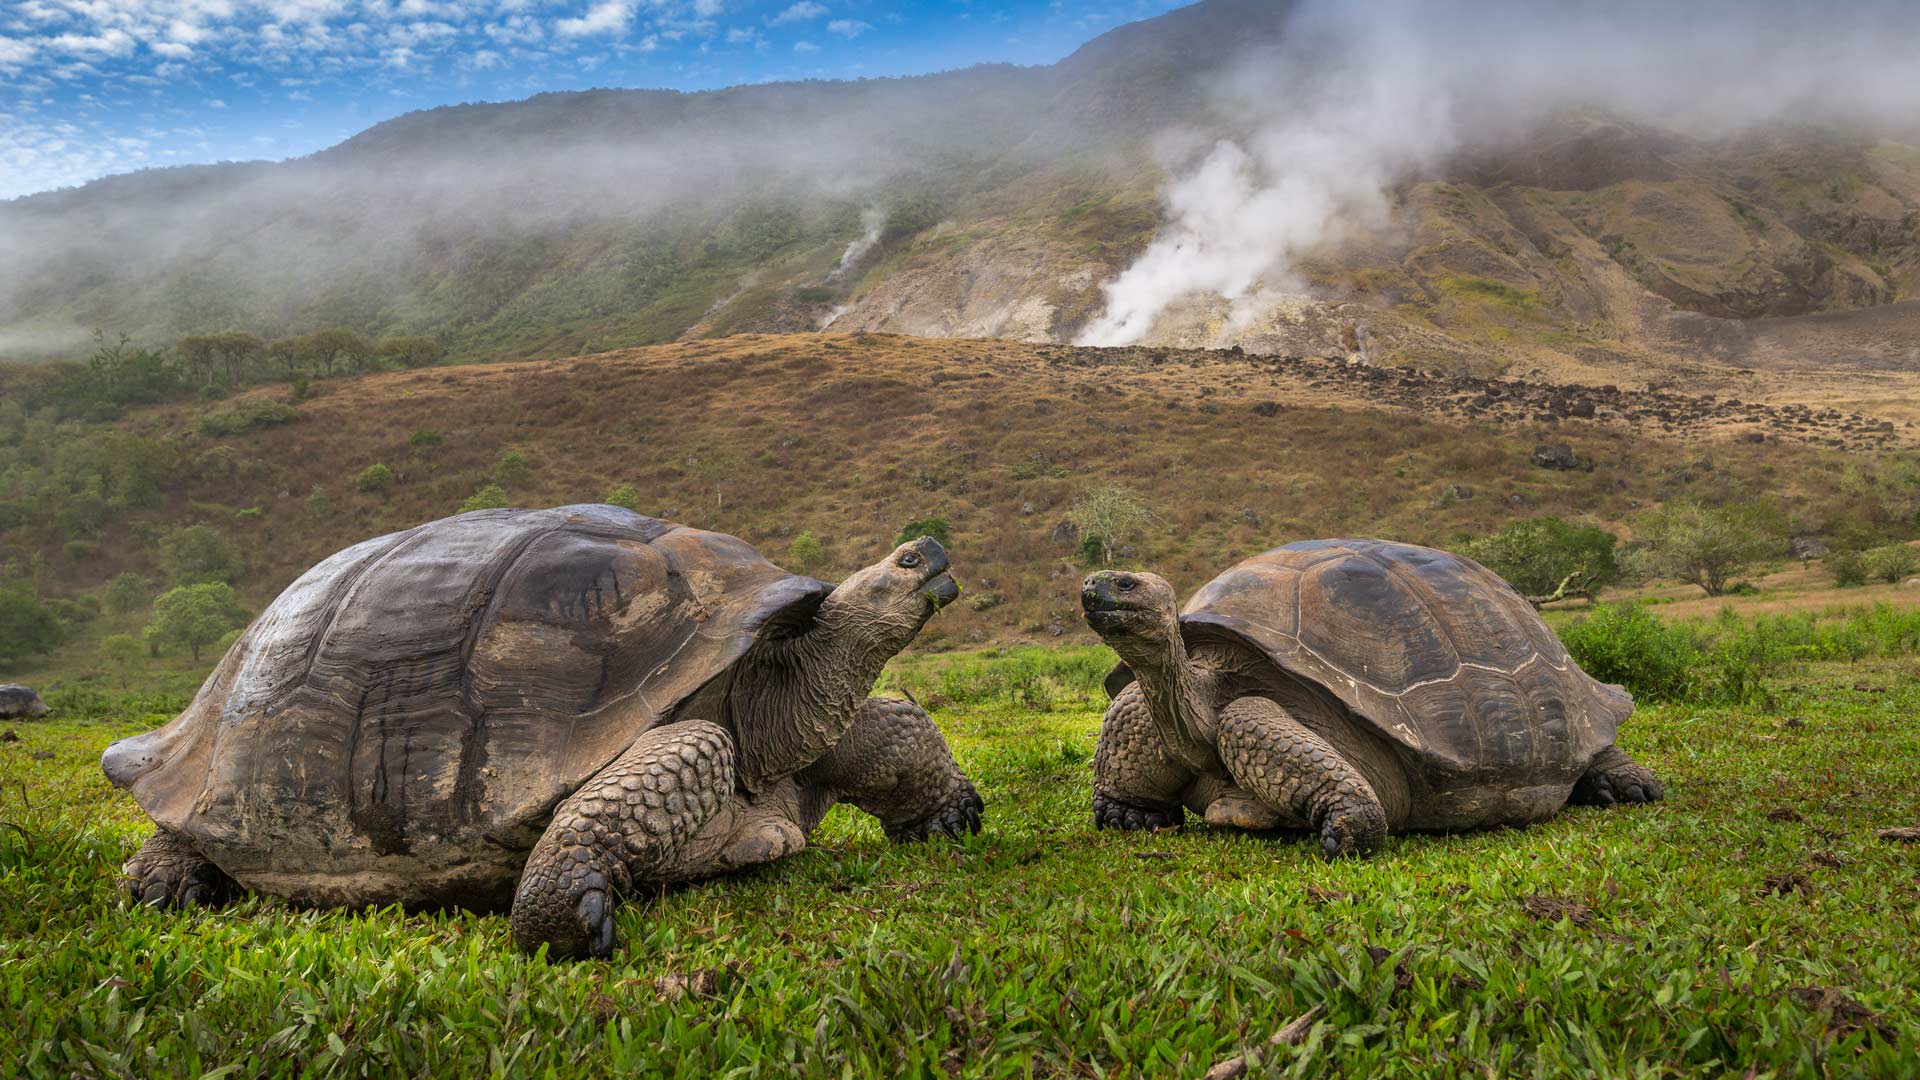 Volcán Alcedo giant tortoise, Isabela Island